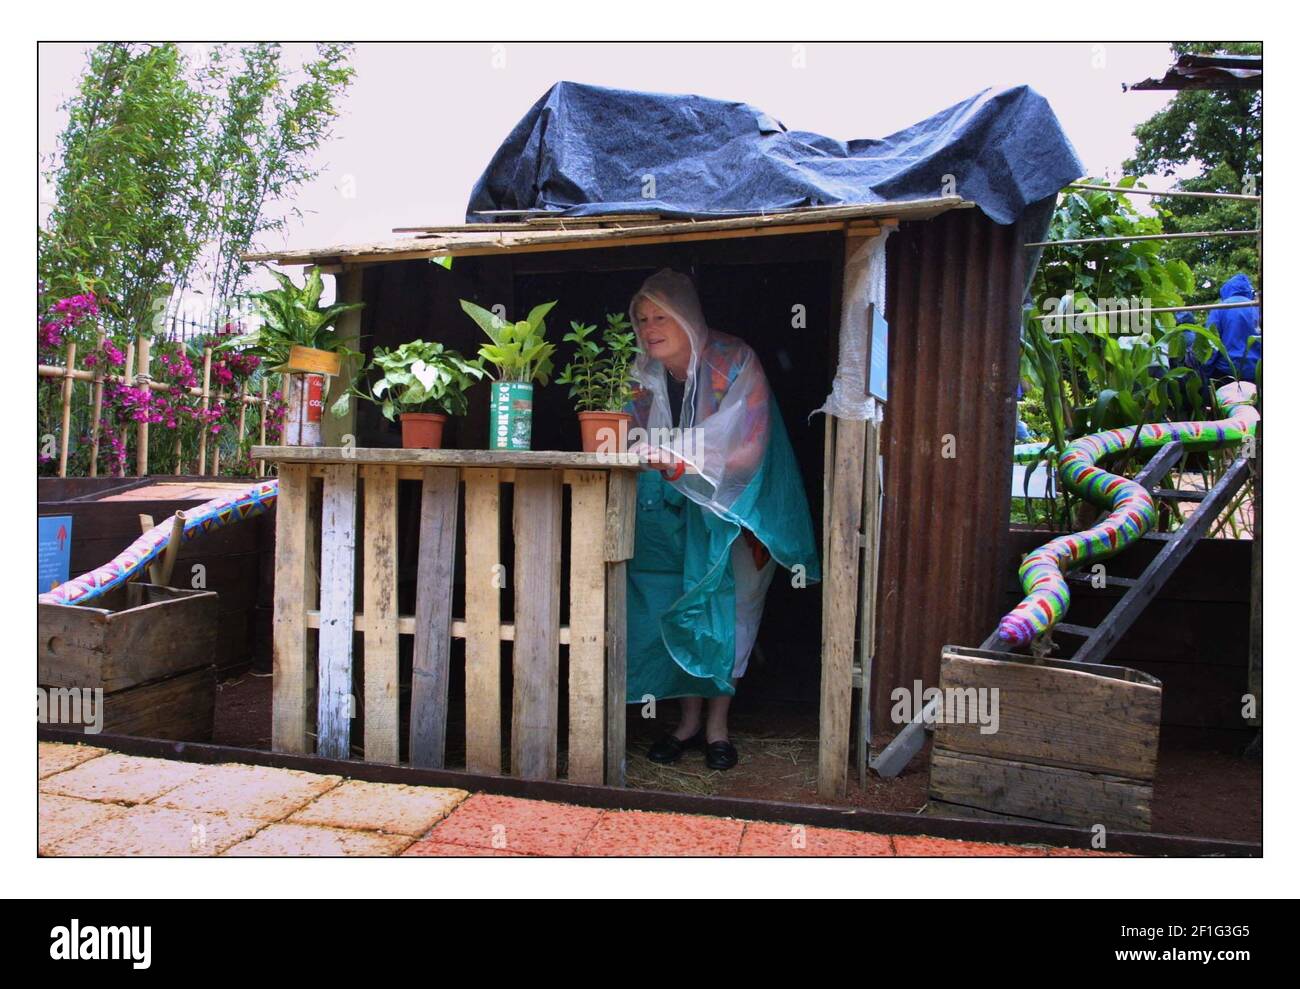 Le premier jour du spectacle de fleurs de Hampton court.....se cacher de la pluie donne à ce visiteur l'occasion d'inspecter le jardin des lieux de commerce de Christian Aid, un favori parmi les visiteurs.pic David Sandison 2/7/2002 Banque D'Images